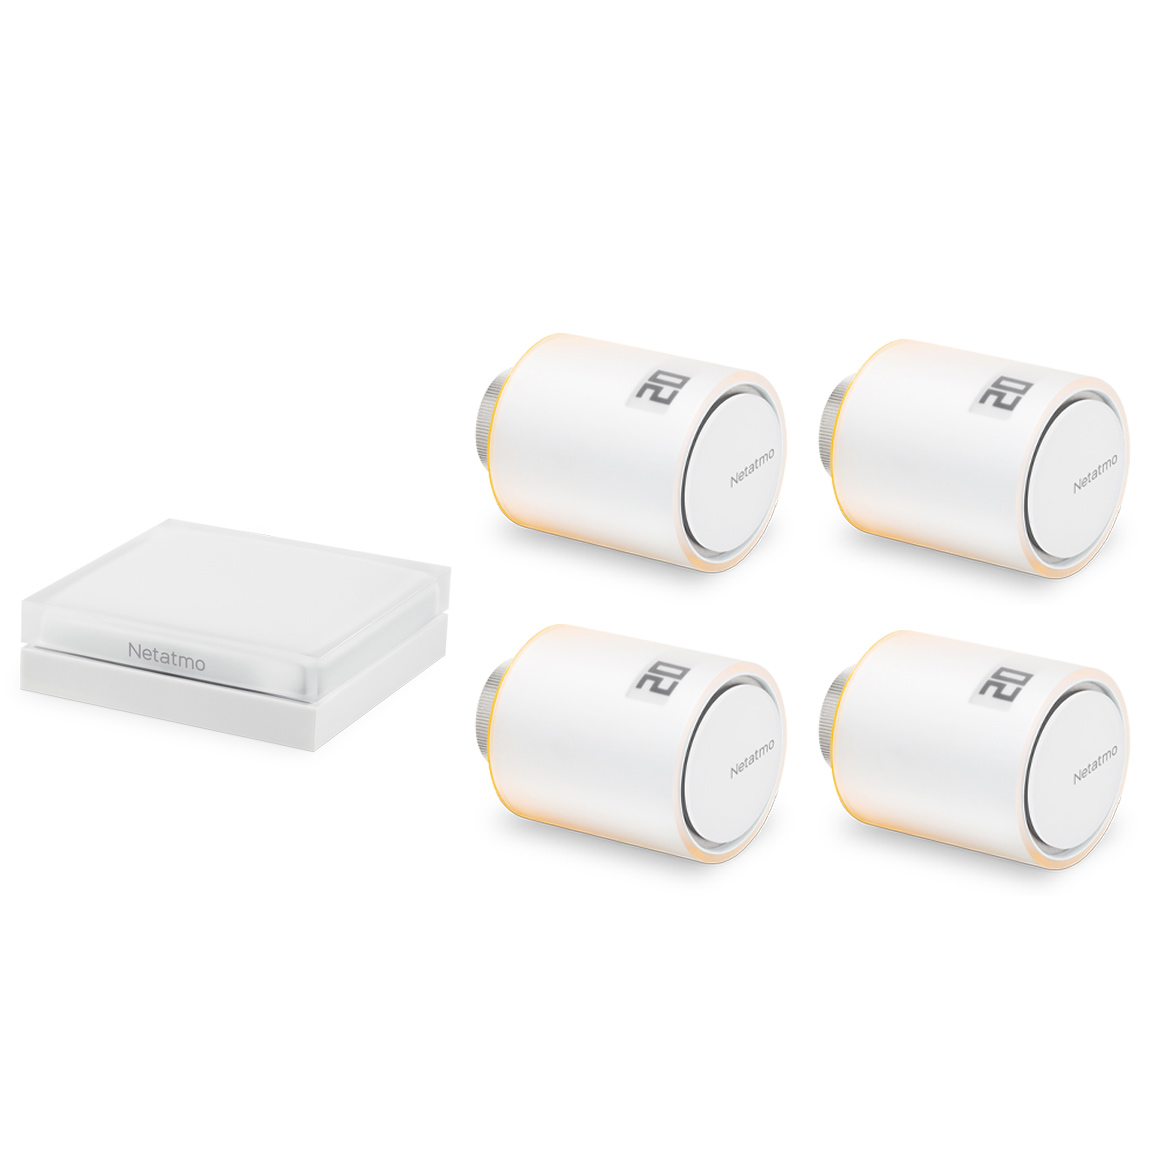 Netatmo Heizkörper-Thermostat Starter Set mit 4 Thermostaten – Deal, Schnäppchen, sparen